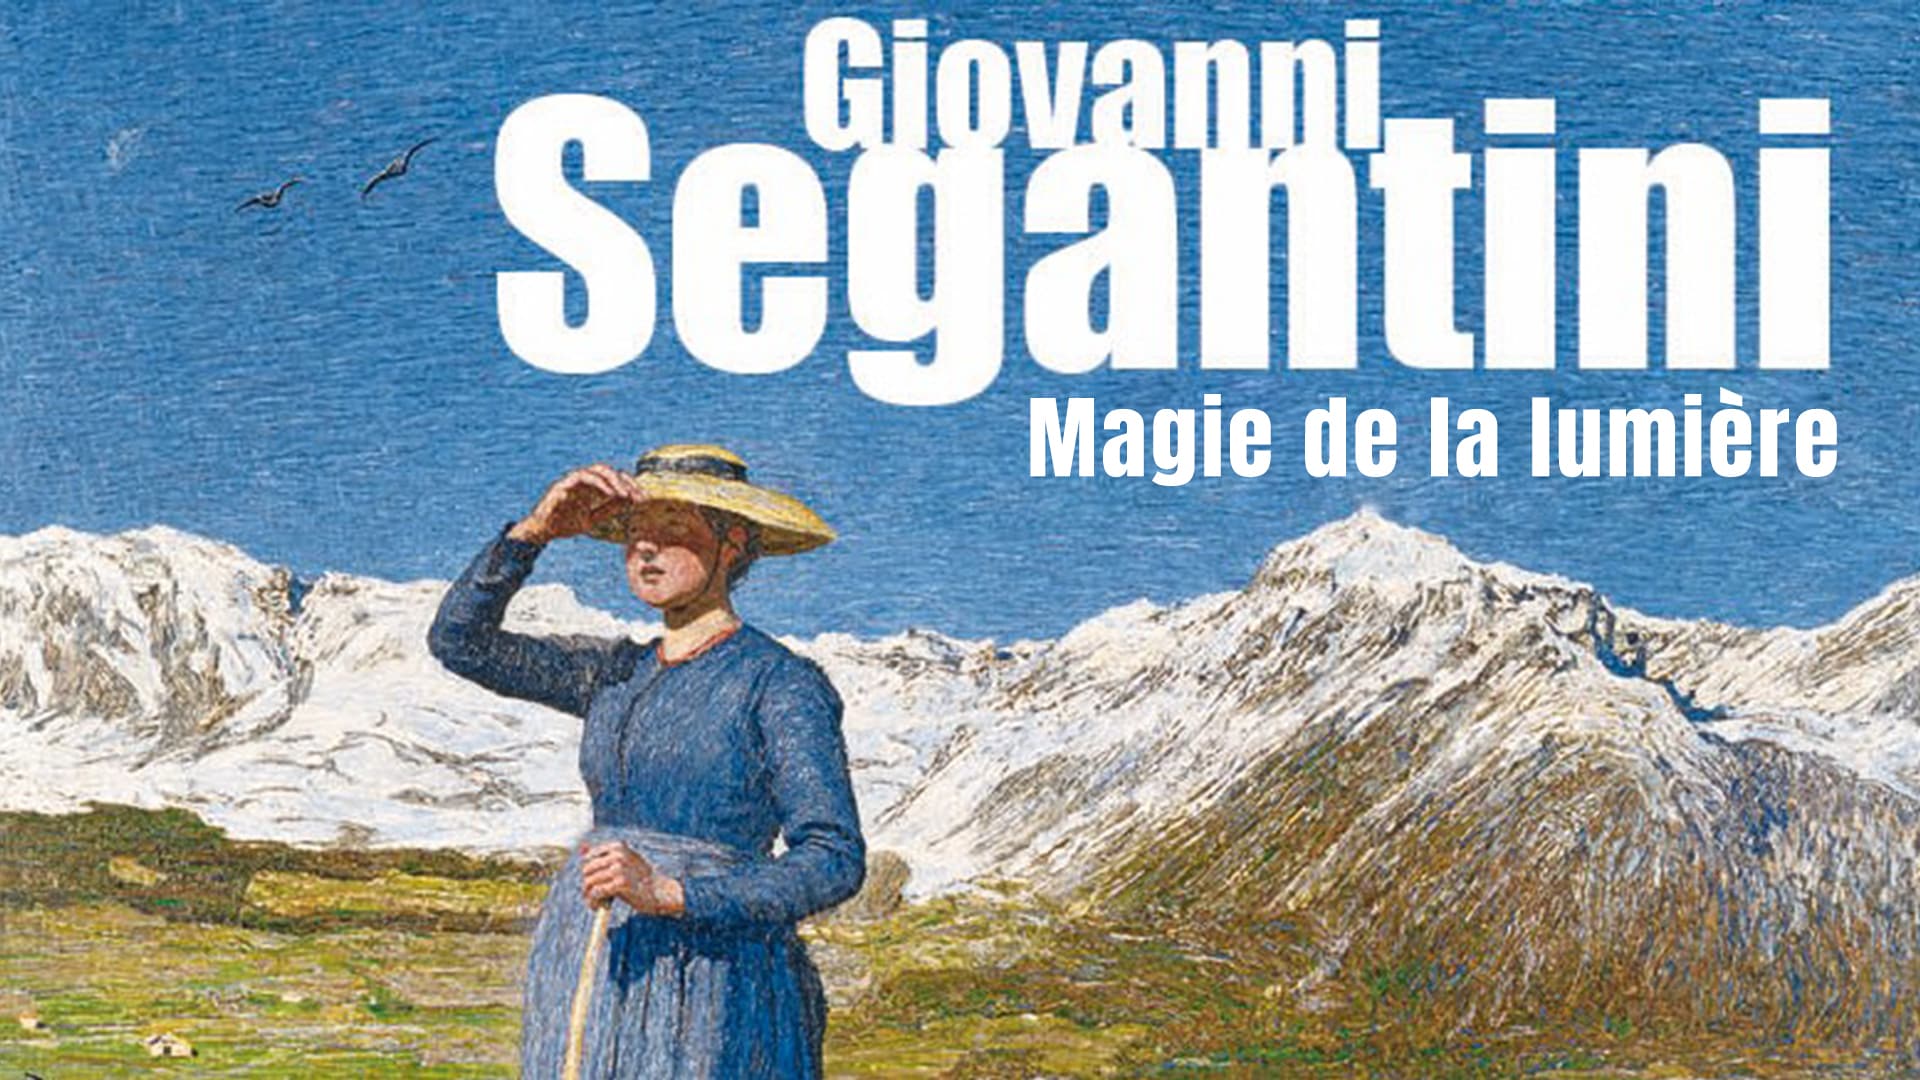 Giovanni Segantini - Magie de la lumière